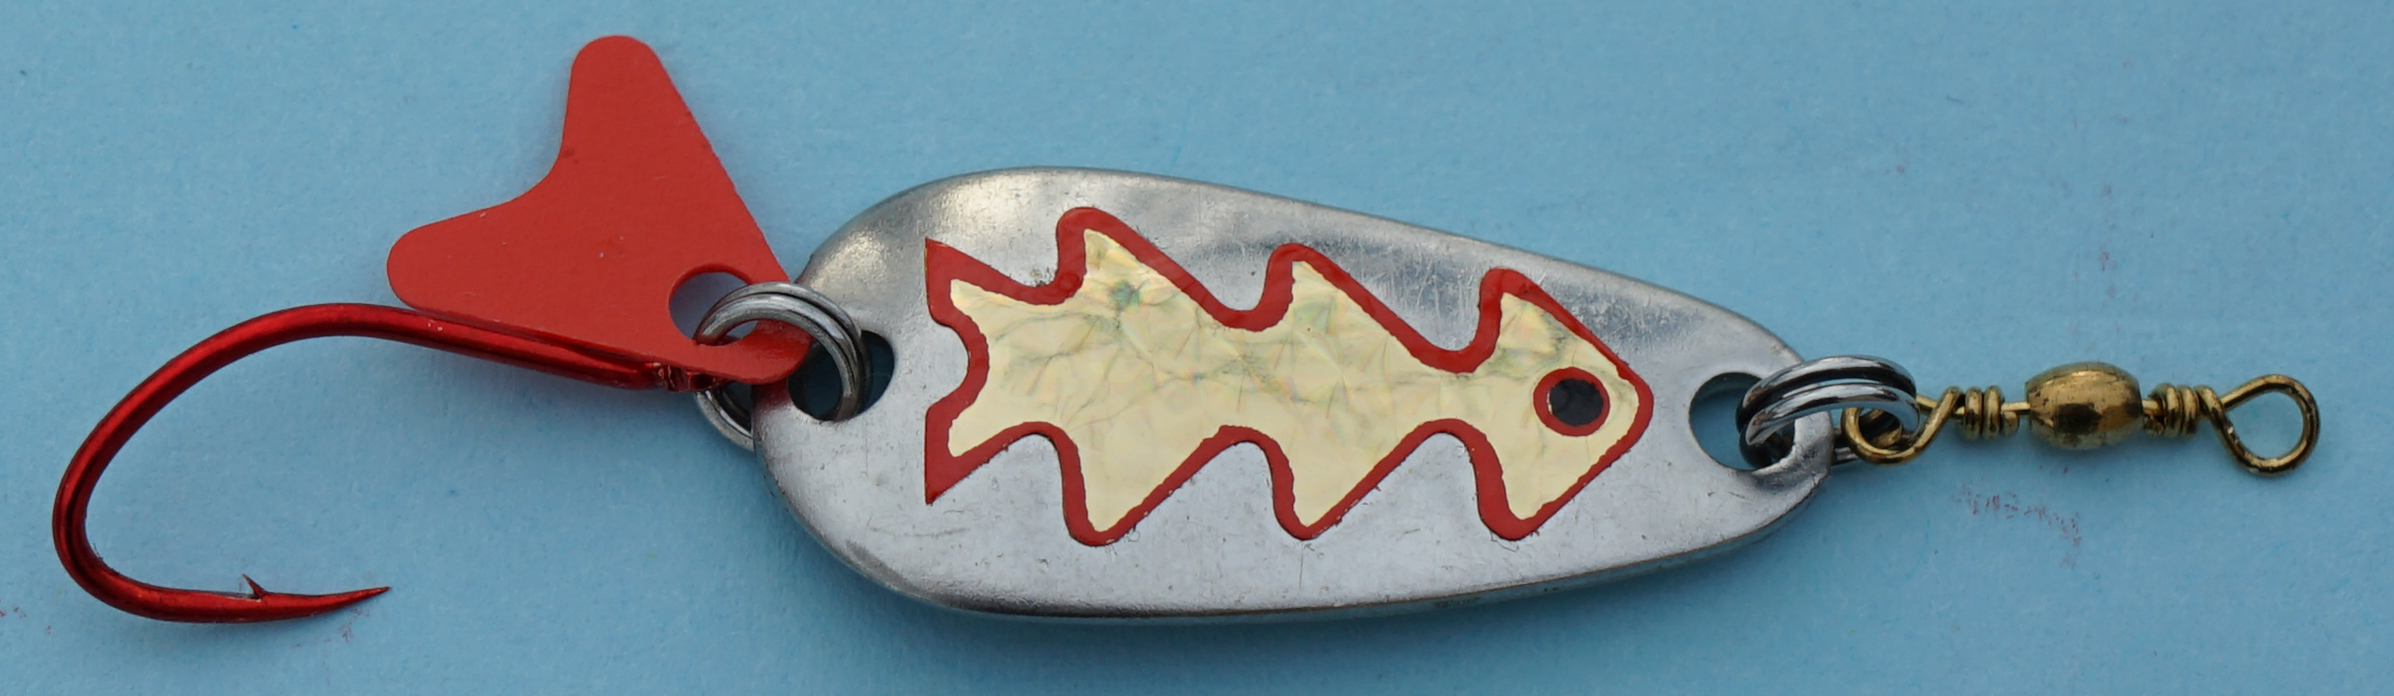 Profi-Spoon aus V2A-Edelstahl mit roten Einzelhaken / Silber mit Reflex-Folie / Gold-Metallic-Dekor / Größe A / 5g / 35mm